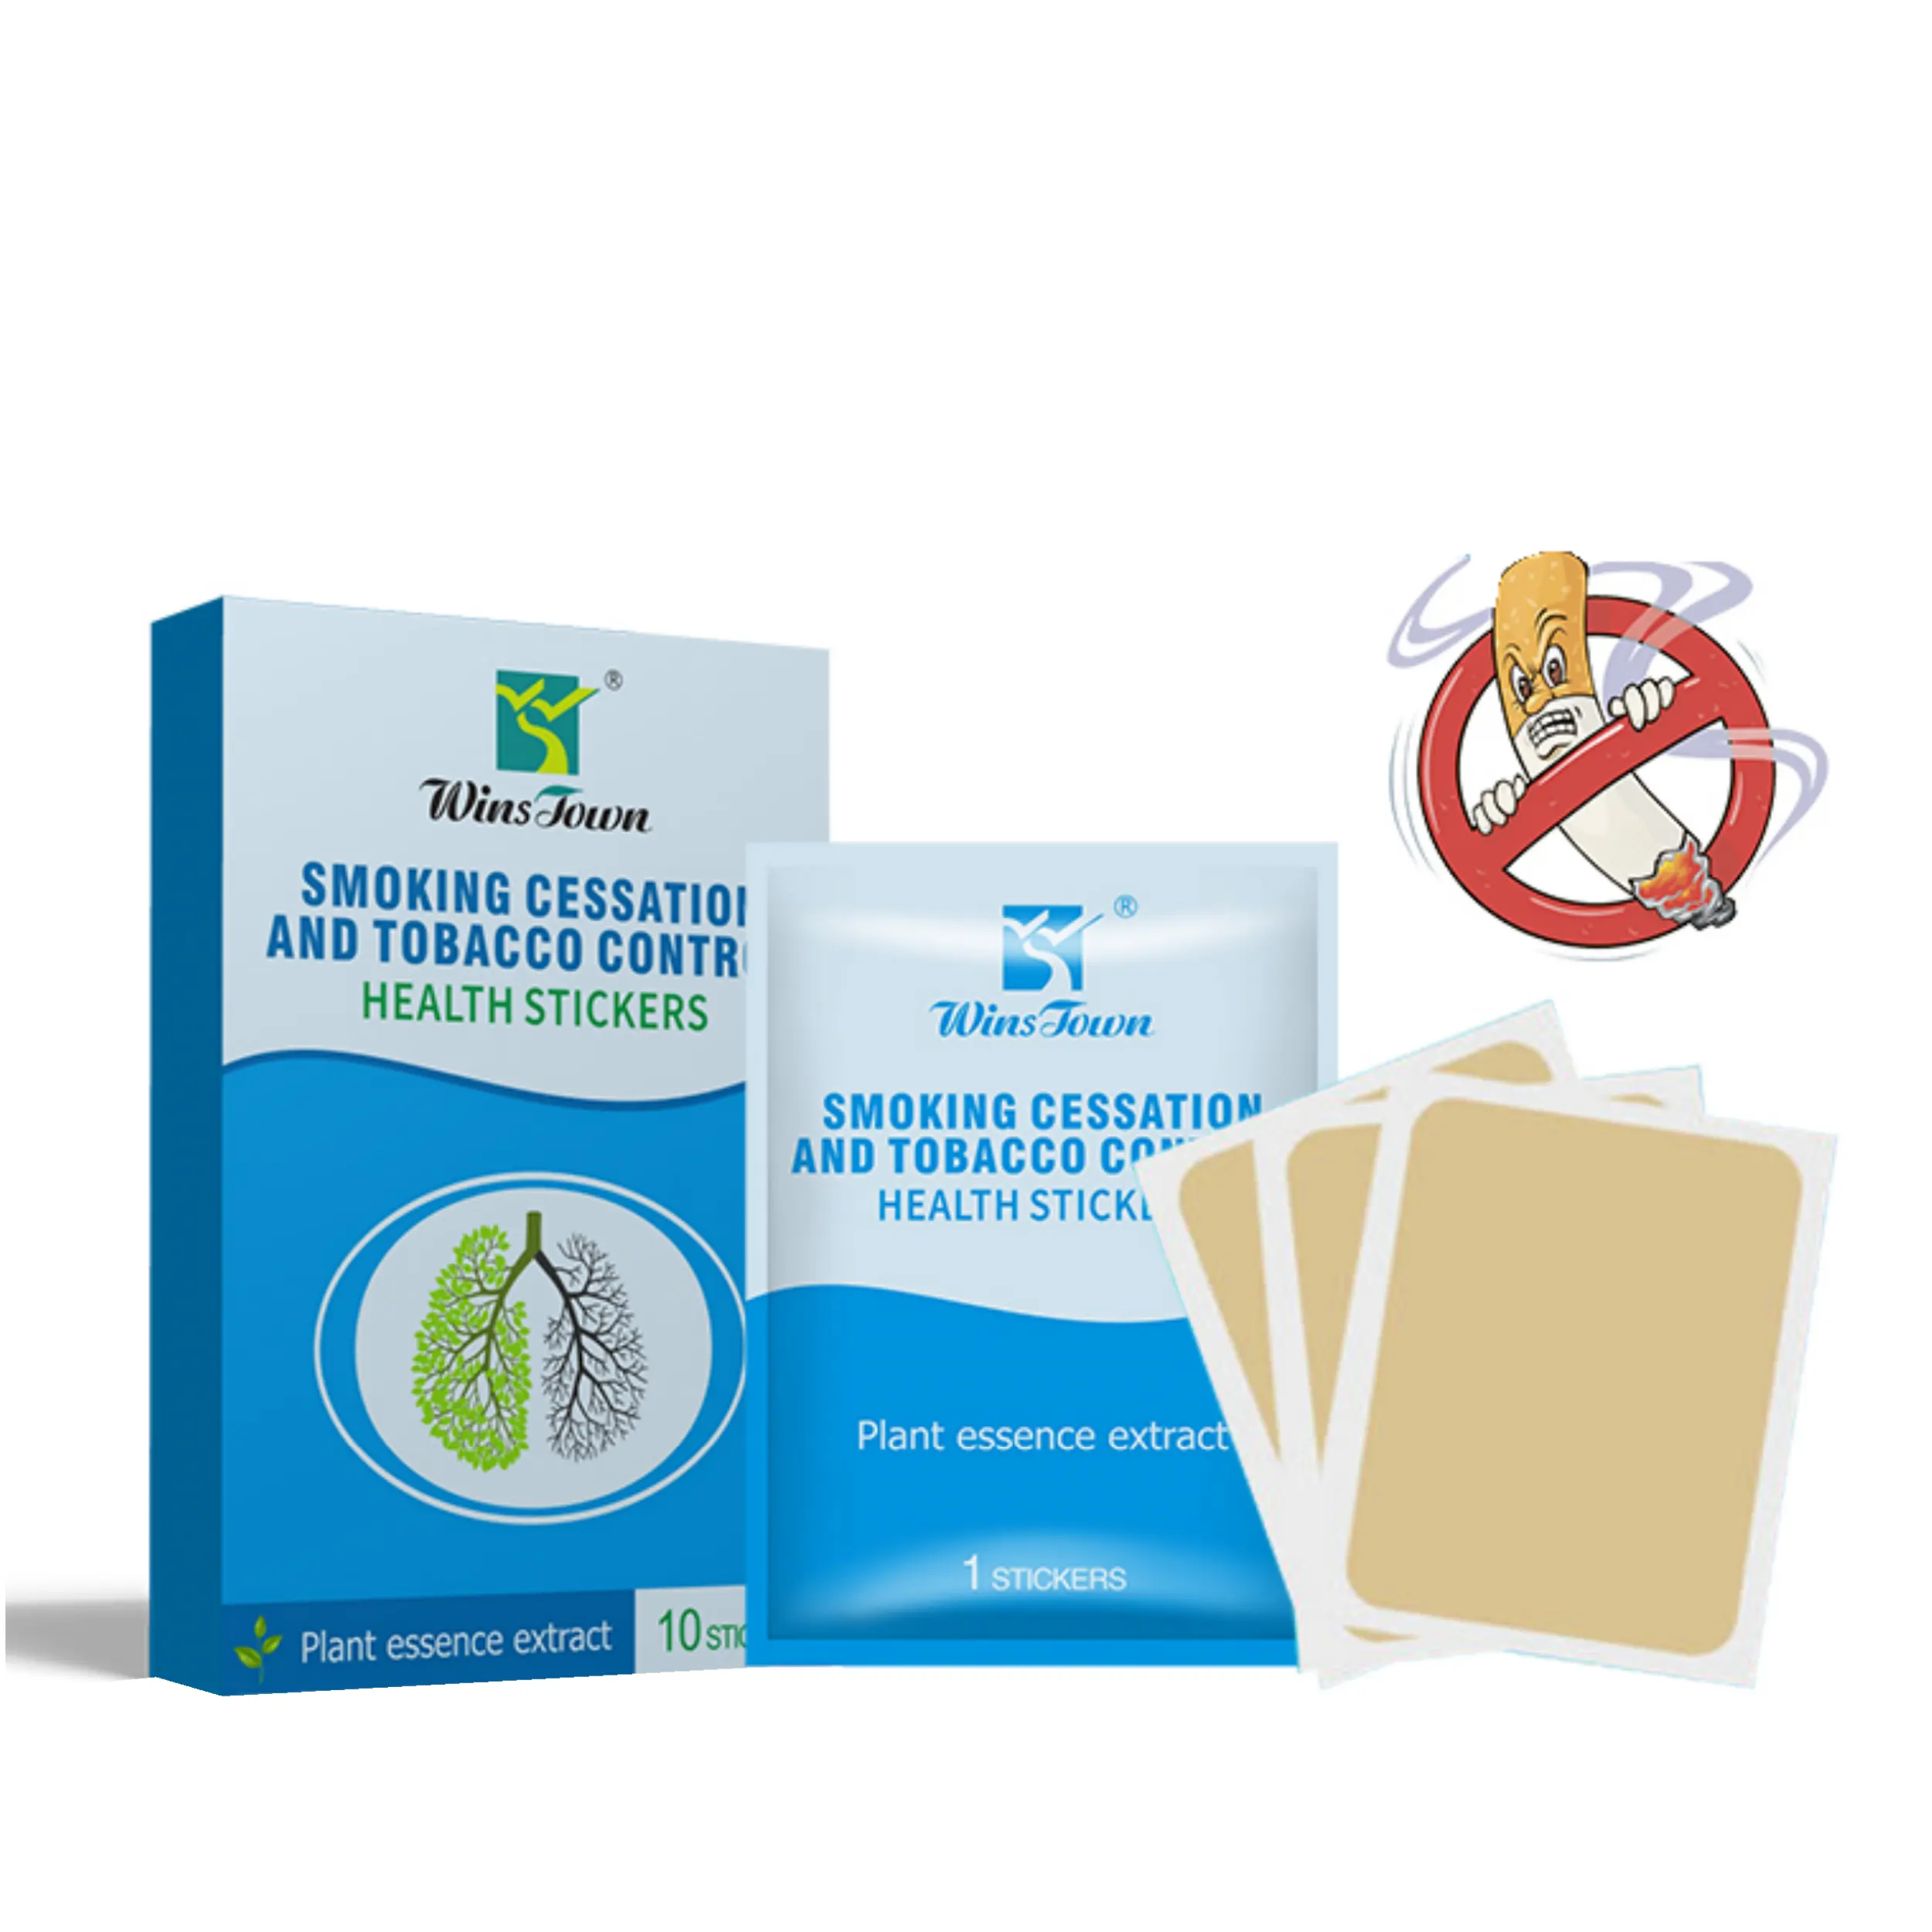 Winstown prodotto per la salute dei polmoni 10 sacchetti per la cessazione e il controllo del tabacco adesivi per la salute